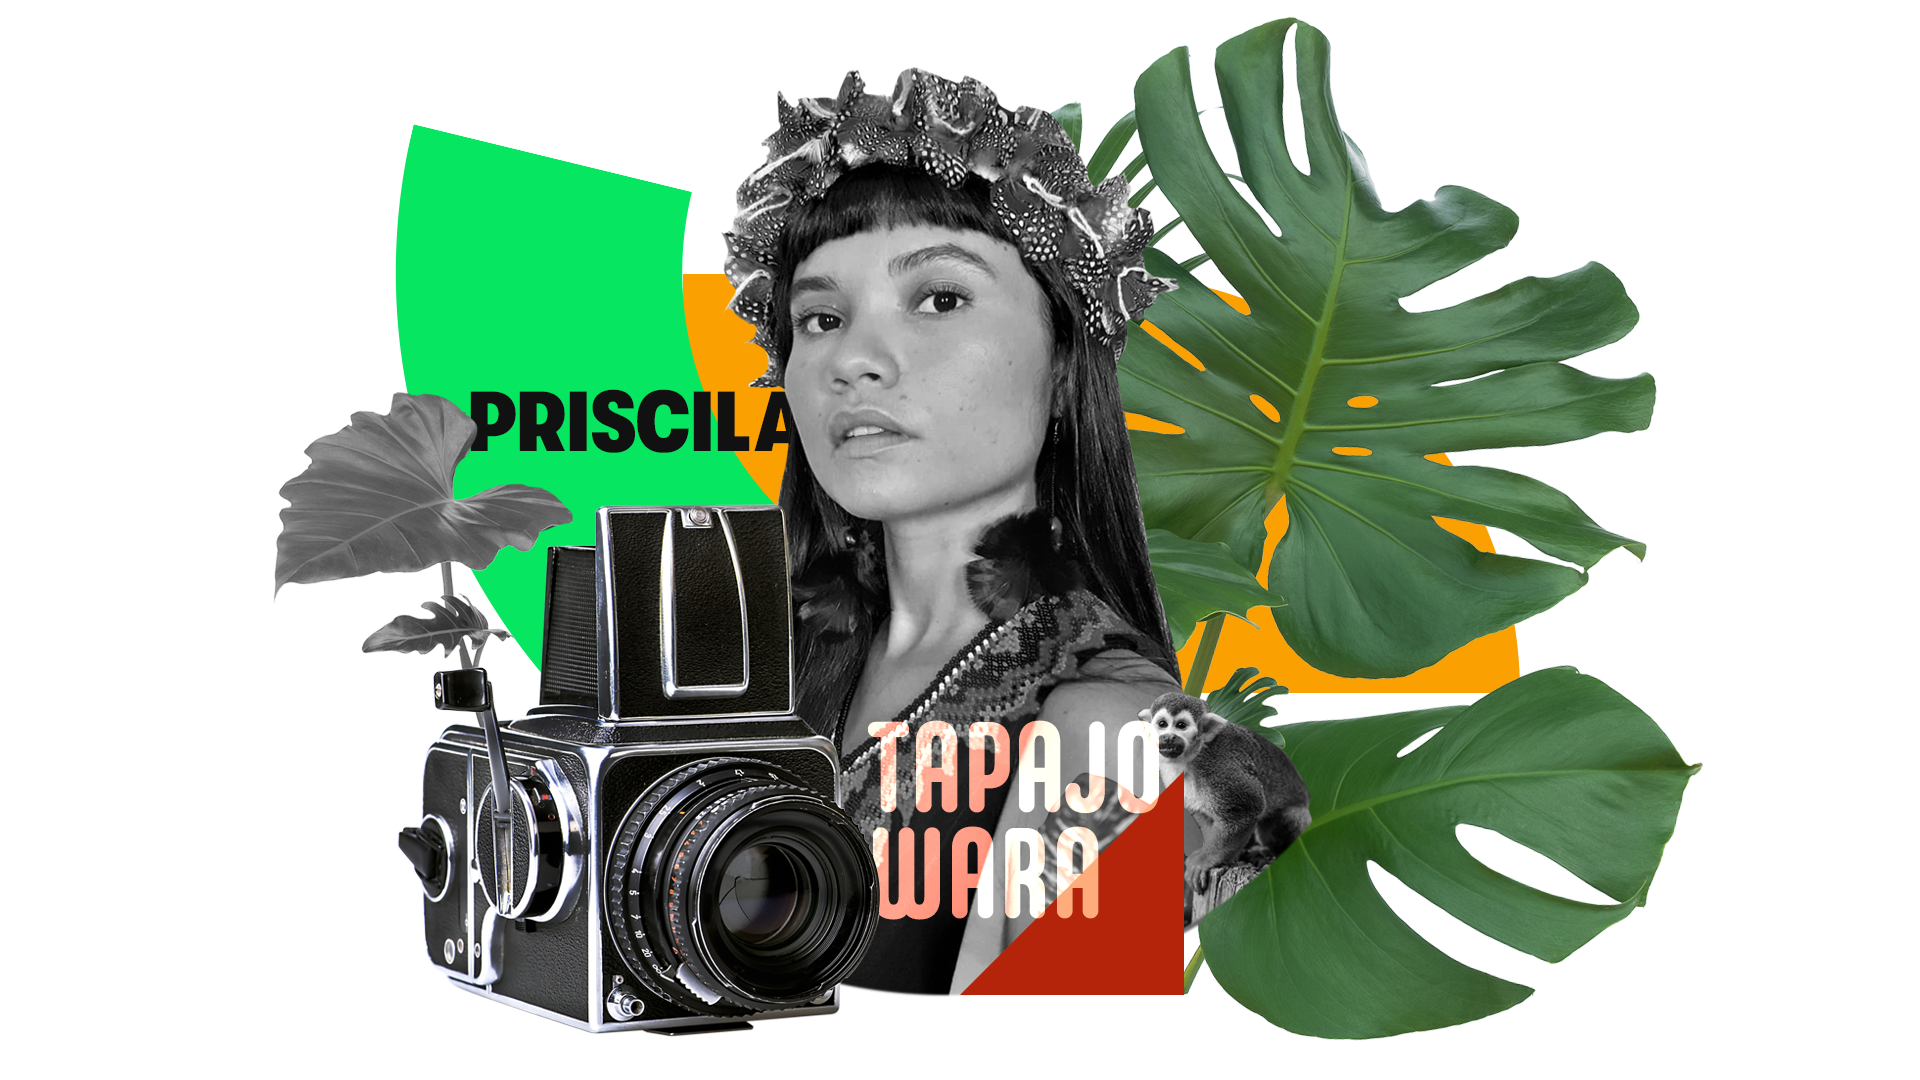 A apresentadora Priscila Tapajowara do Outros Giros também atua como cineasta e fotógrafa indígena